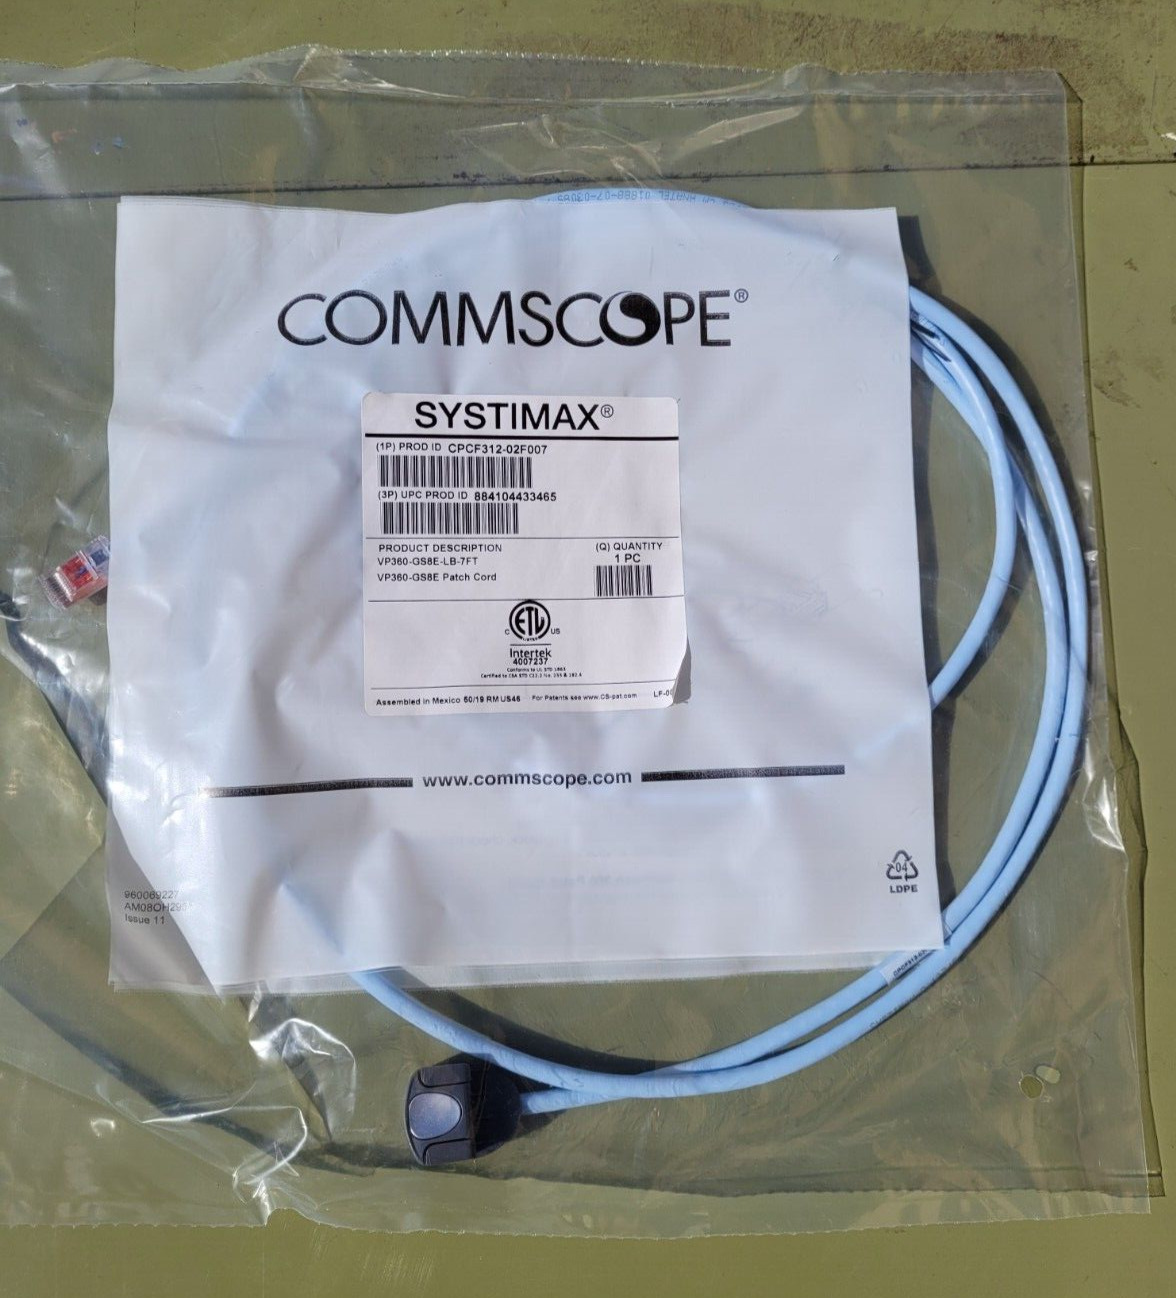 Brand New Commscope Systimax CPCF312-02F007 VP360-GS8E-LB-7FT GS8E Patch Cord